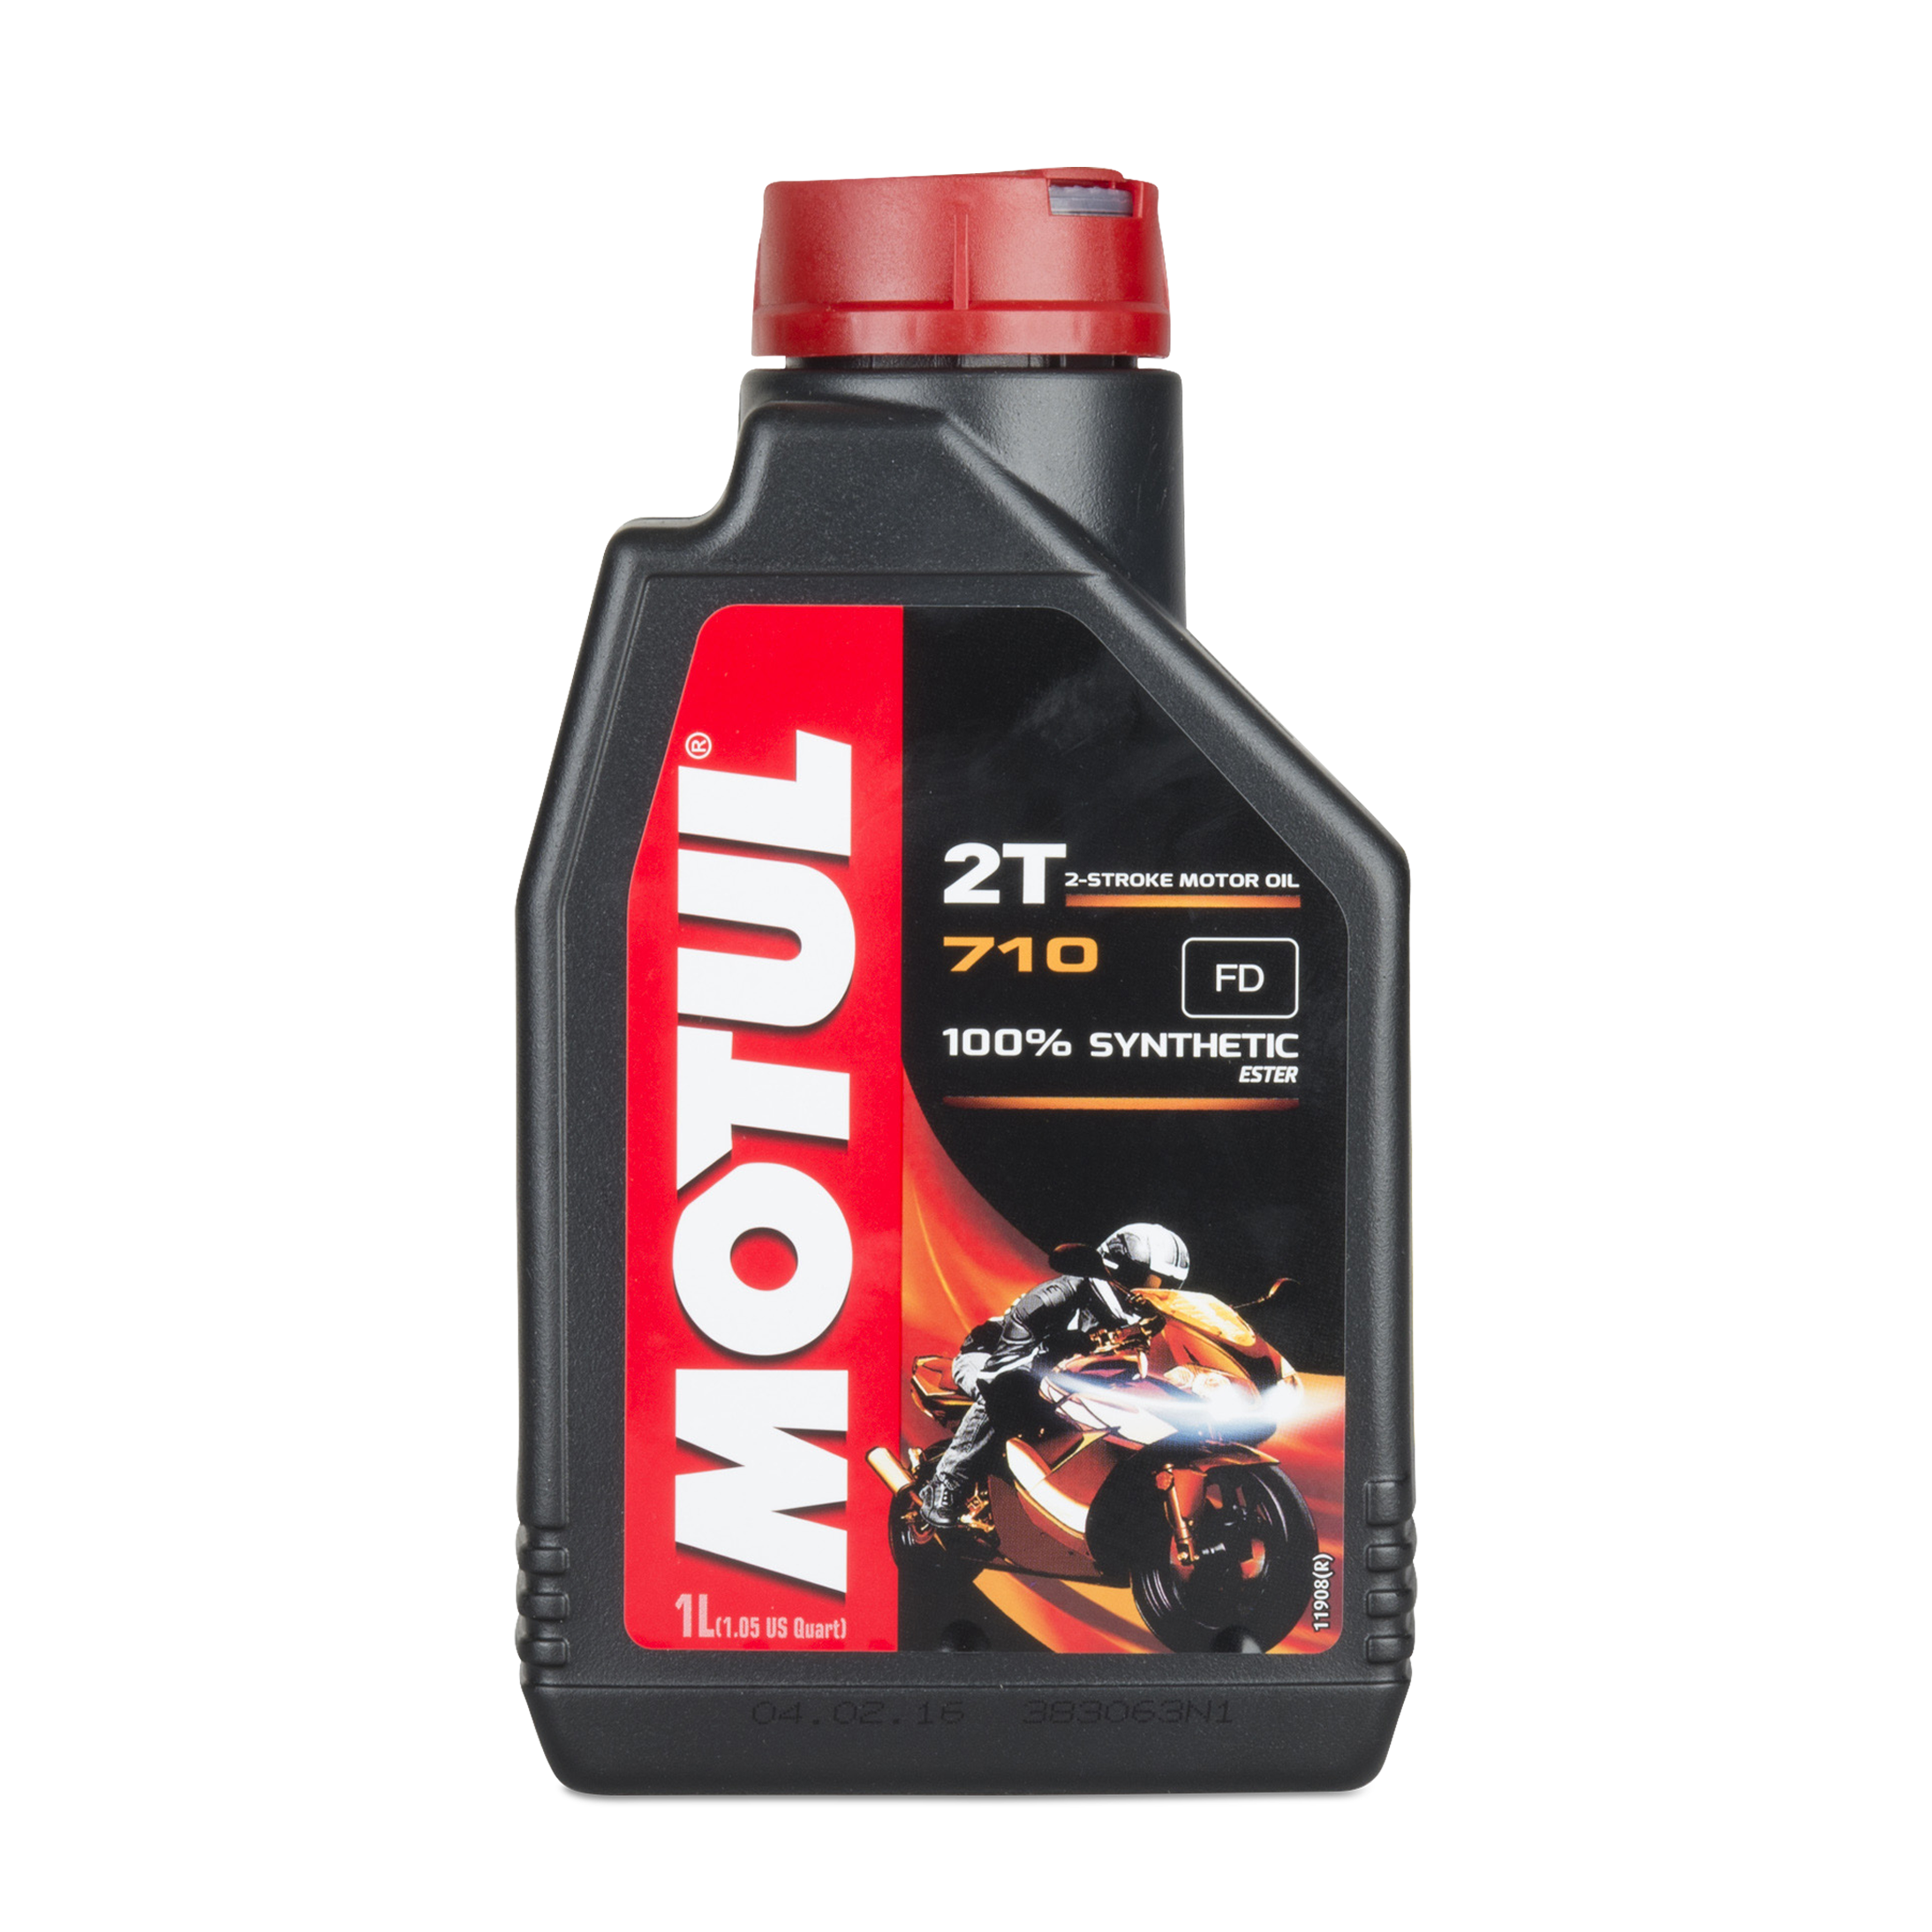 Motul 710 5 Liters 2T 100% synthetic 2-Stroke Ester Core Engine Motor Oil 5  x 1L